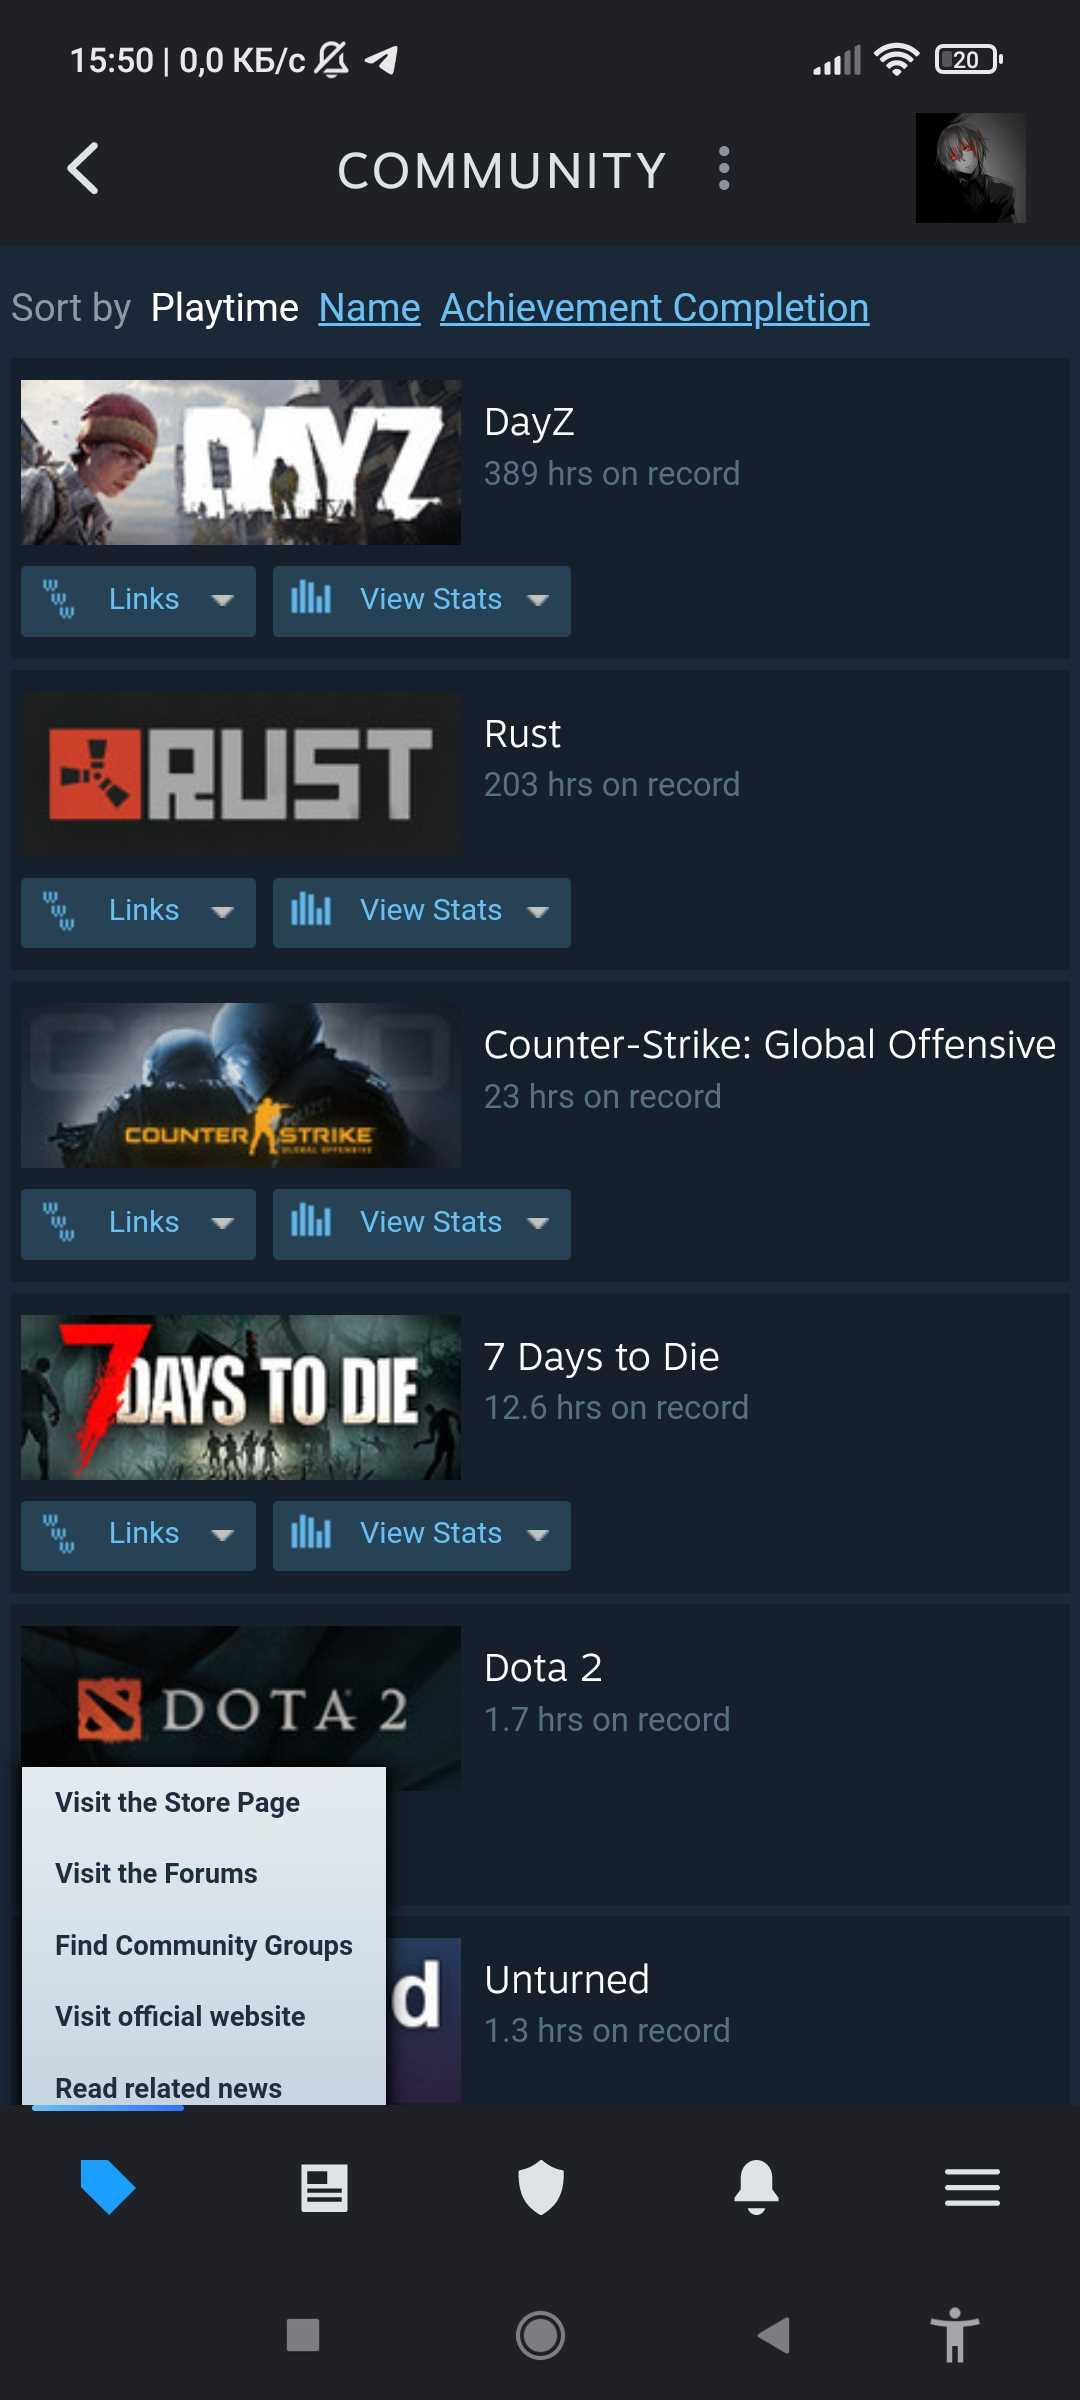 продажа аккаунта к игре Rust